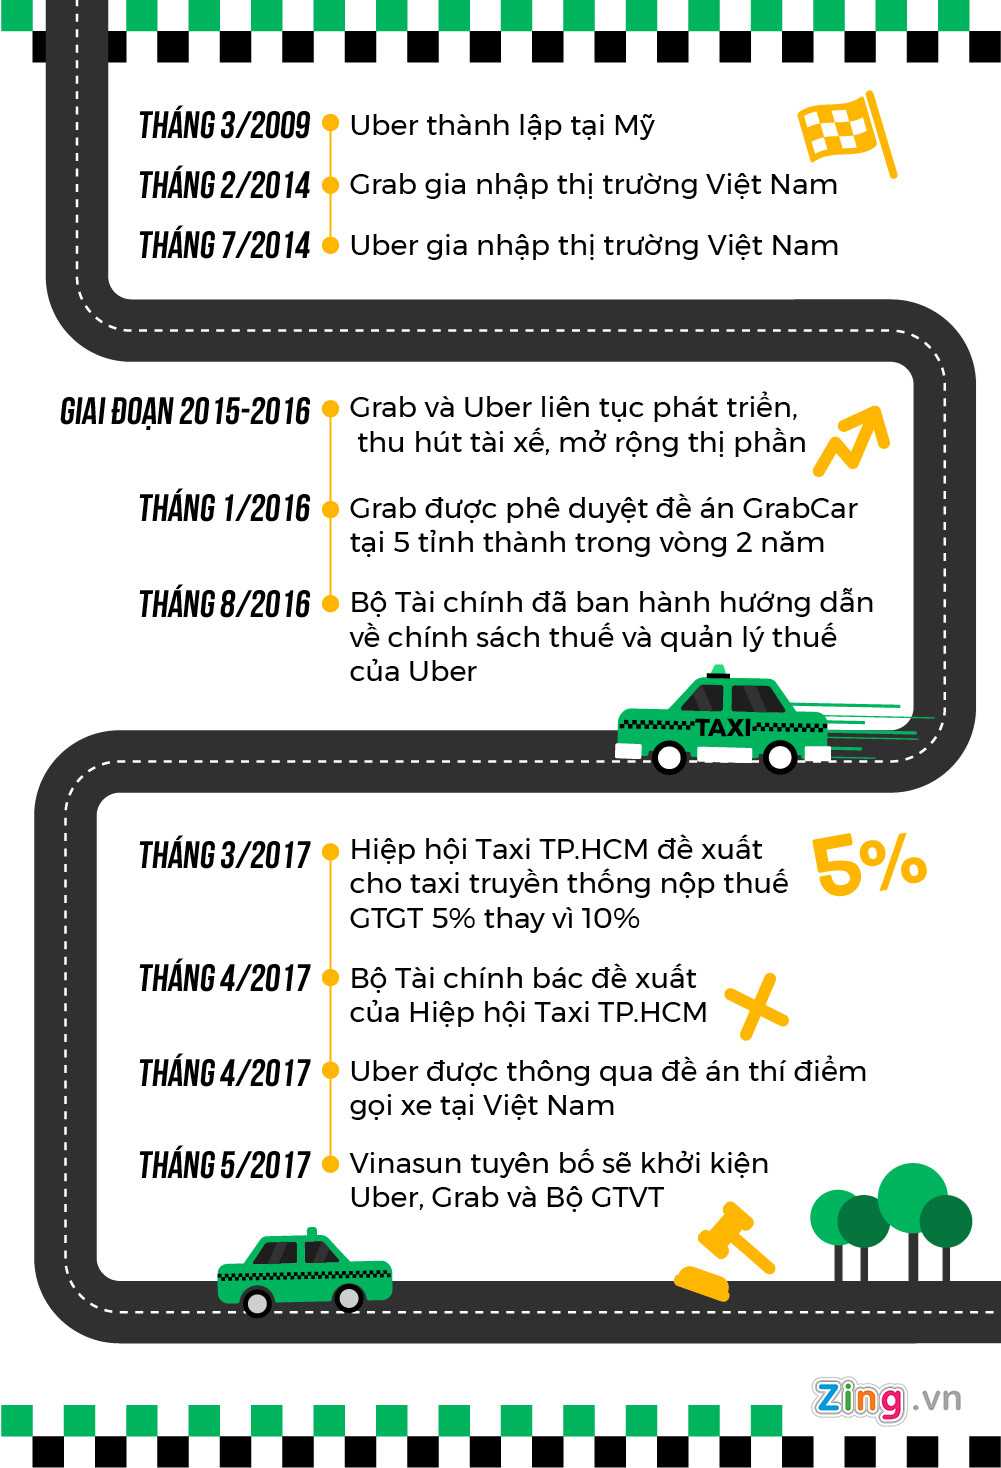 Quá trình hình thành và phát triển của Uber và Grab tại Việt Nam.